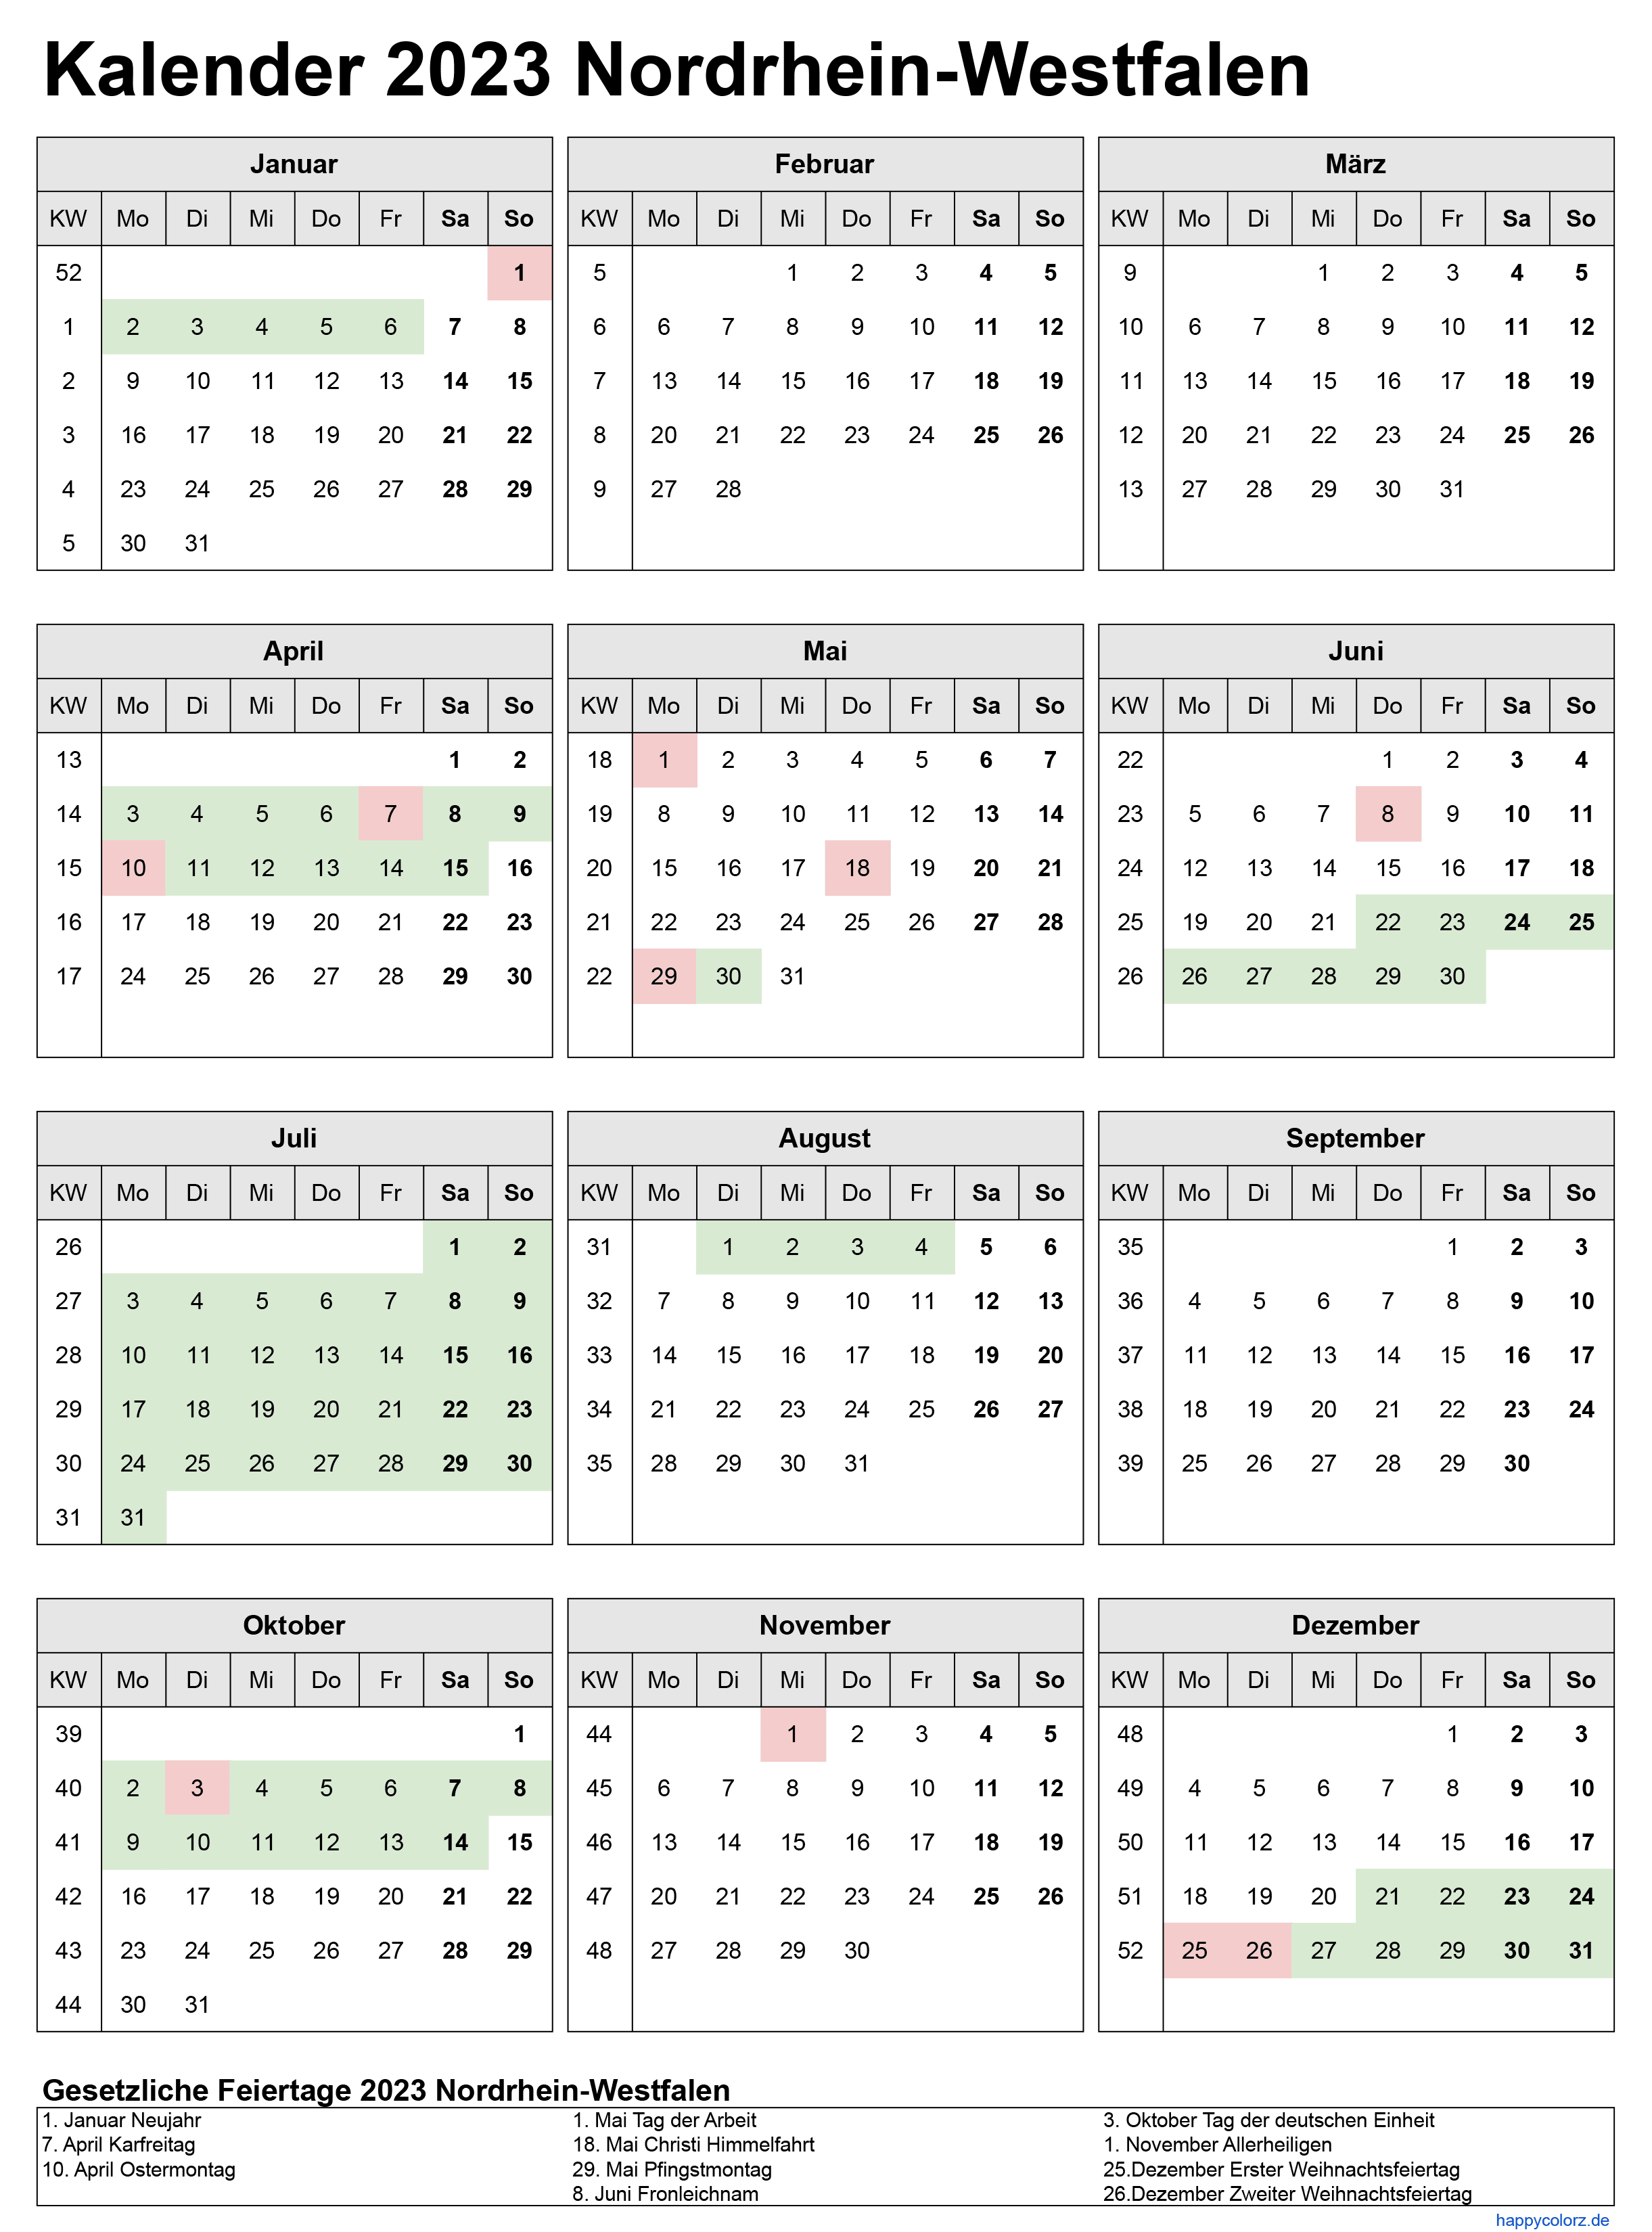 Kalender 2023 NRW zum Ausdrucken